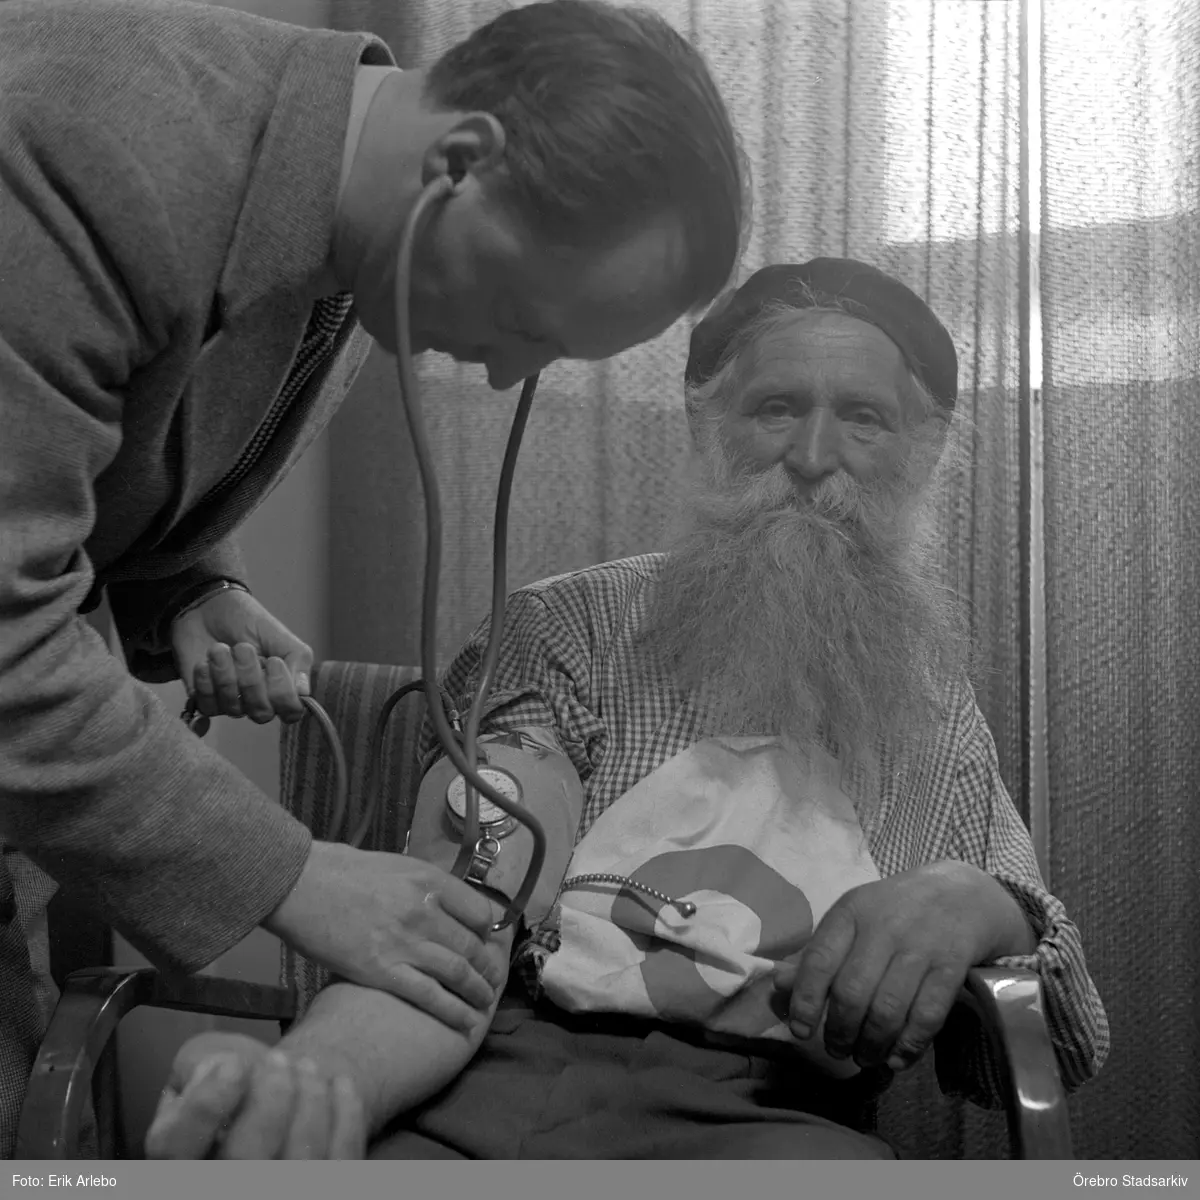 Stålfarfar undersöks av läkare

Stålfarfar Gustav Håkansson.